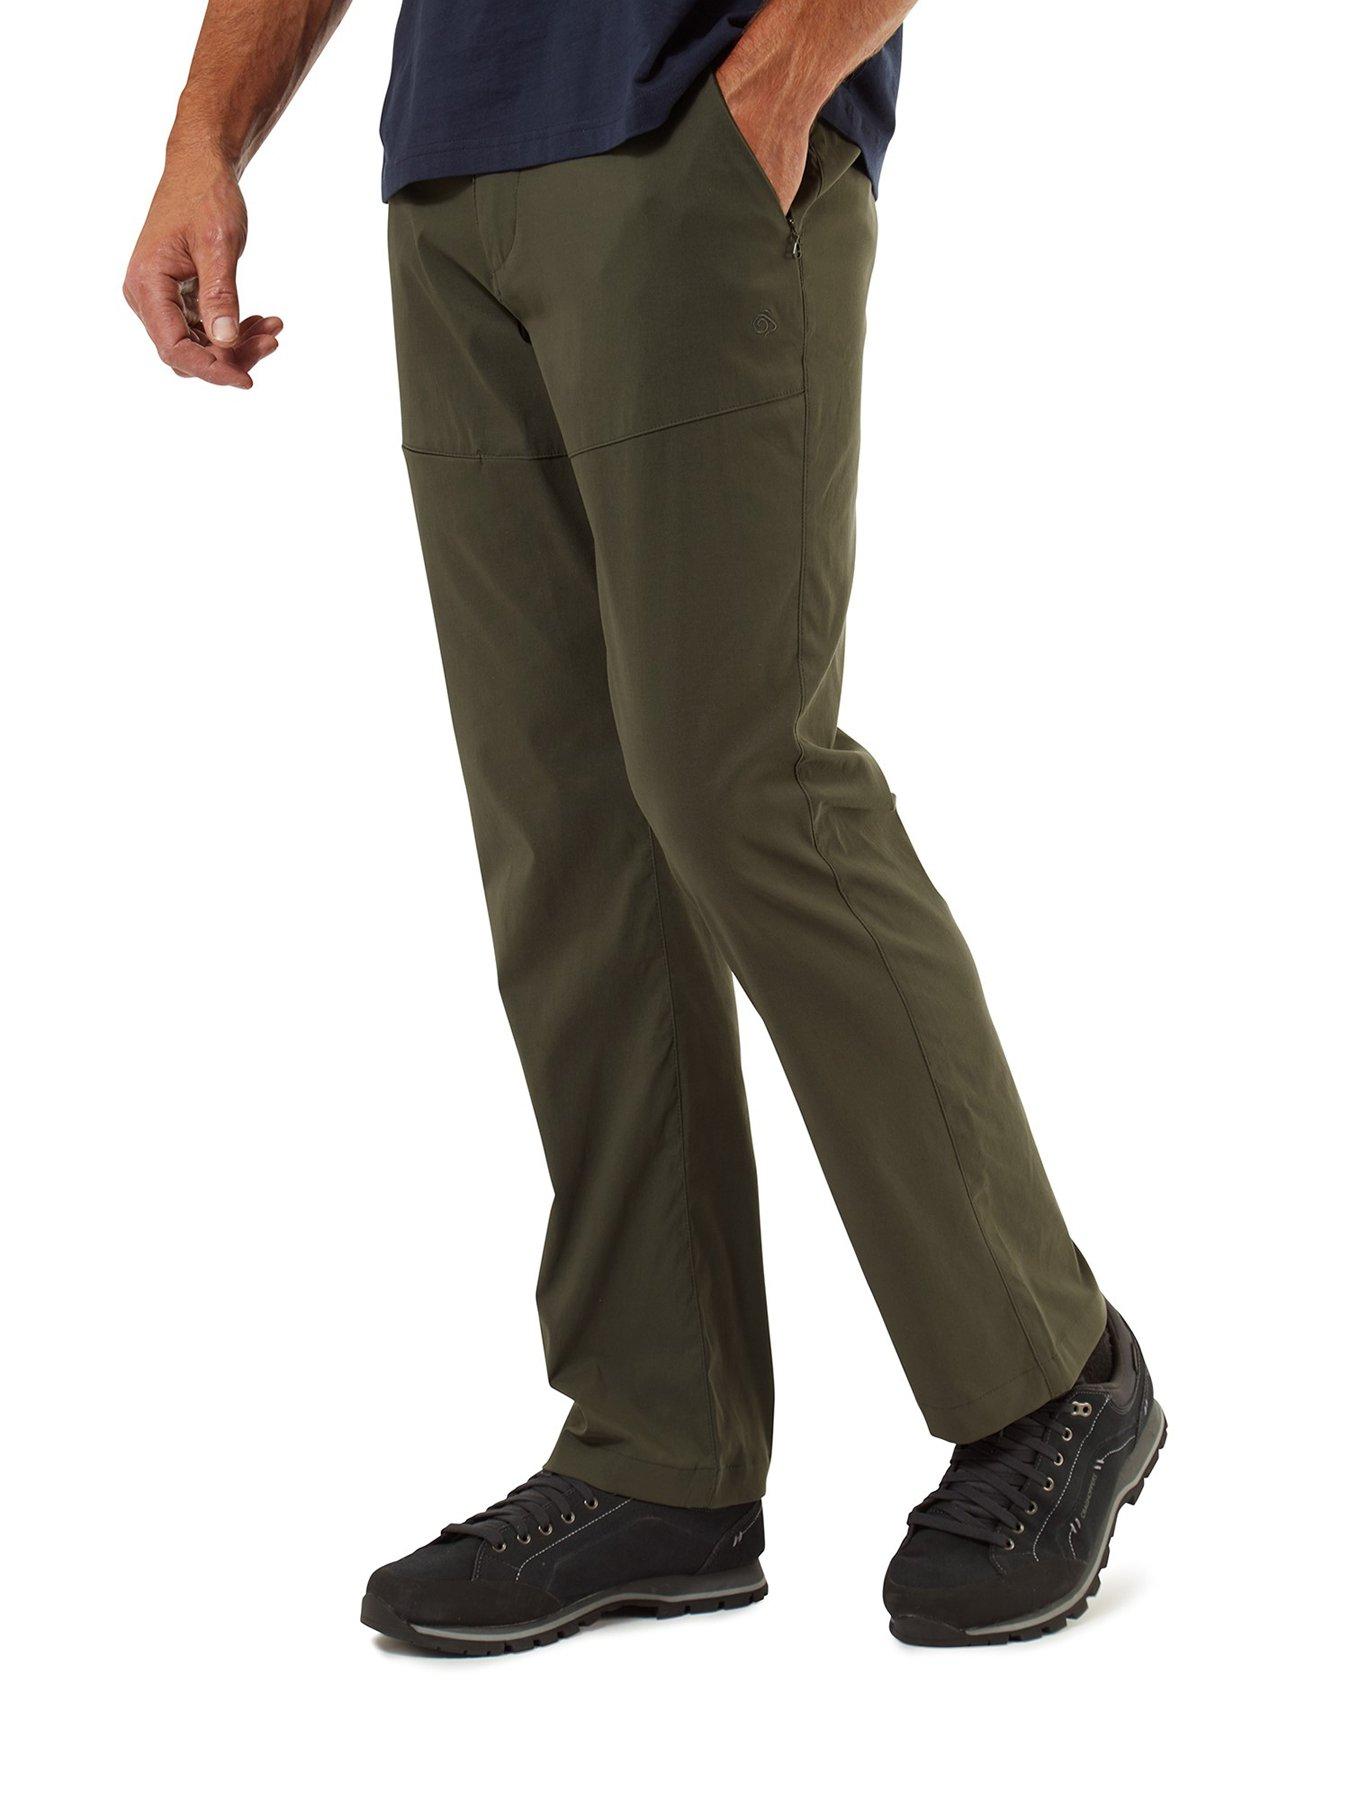 Sportswear Kiwi Pro Trouser - Khaki